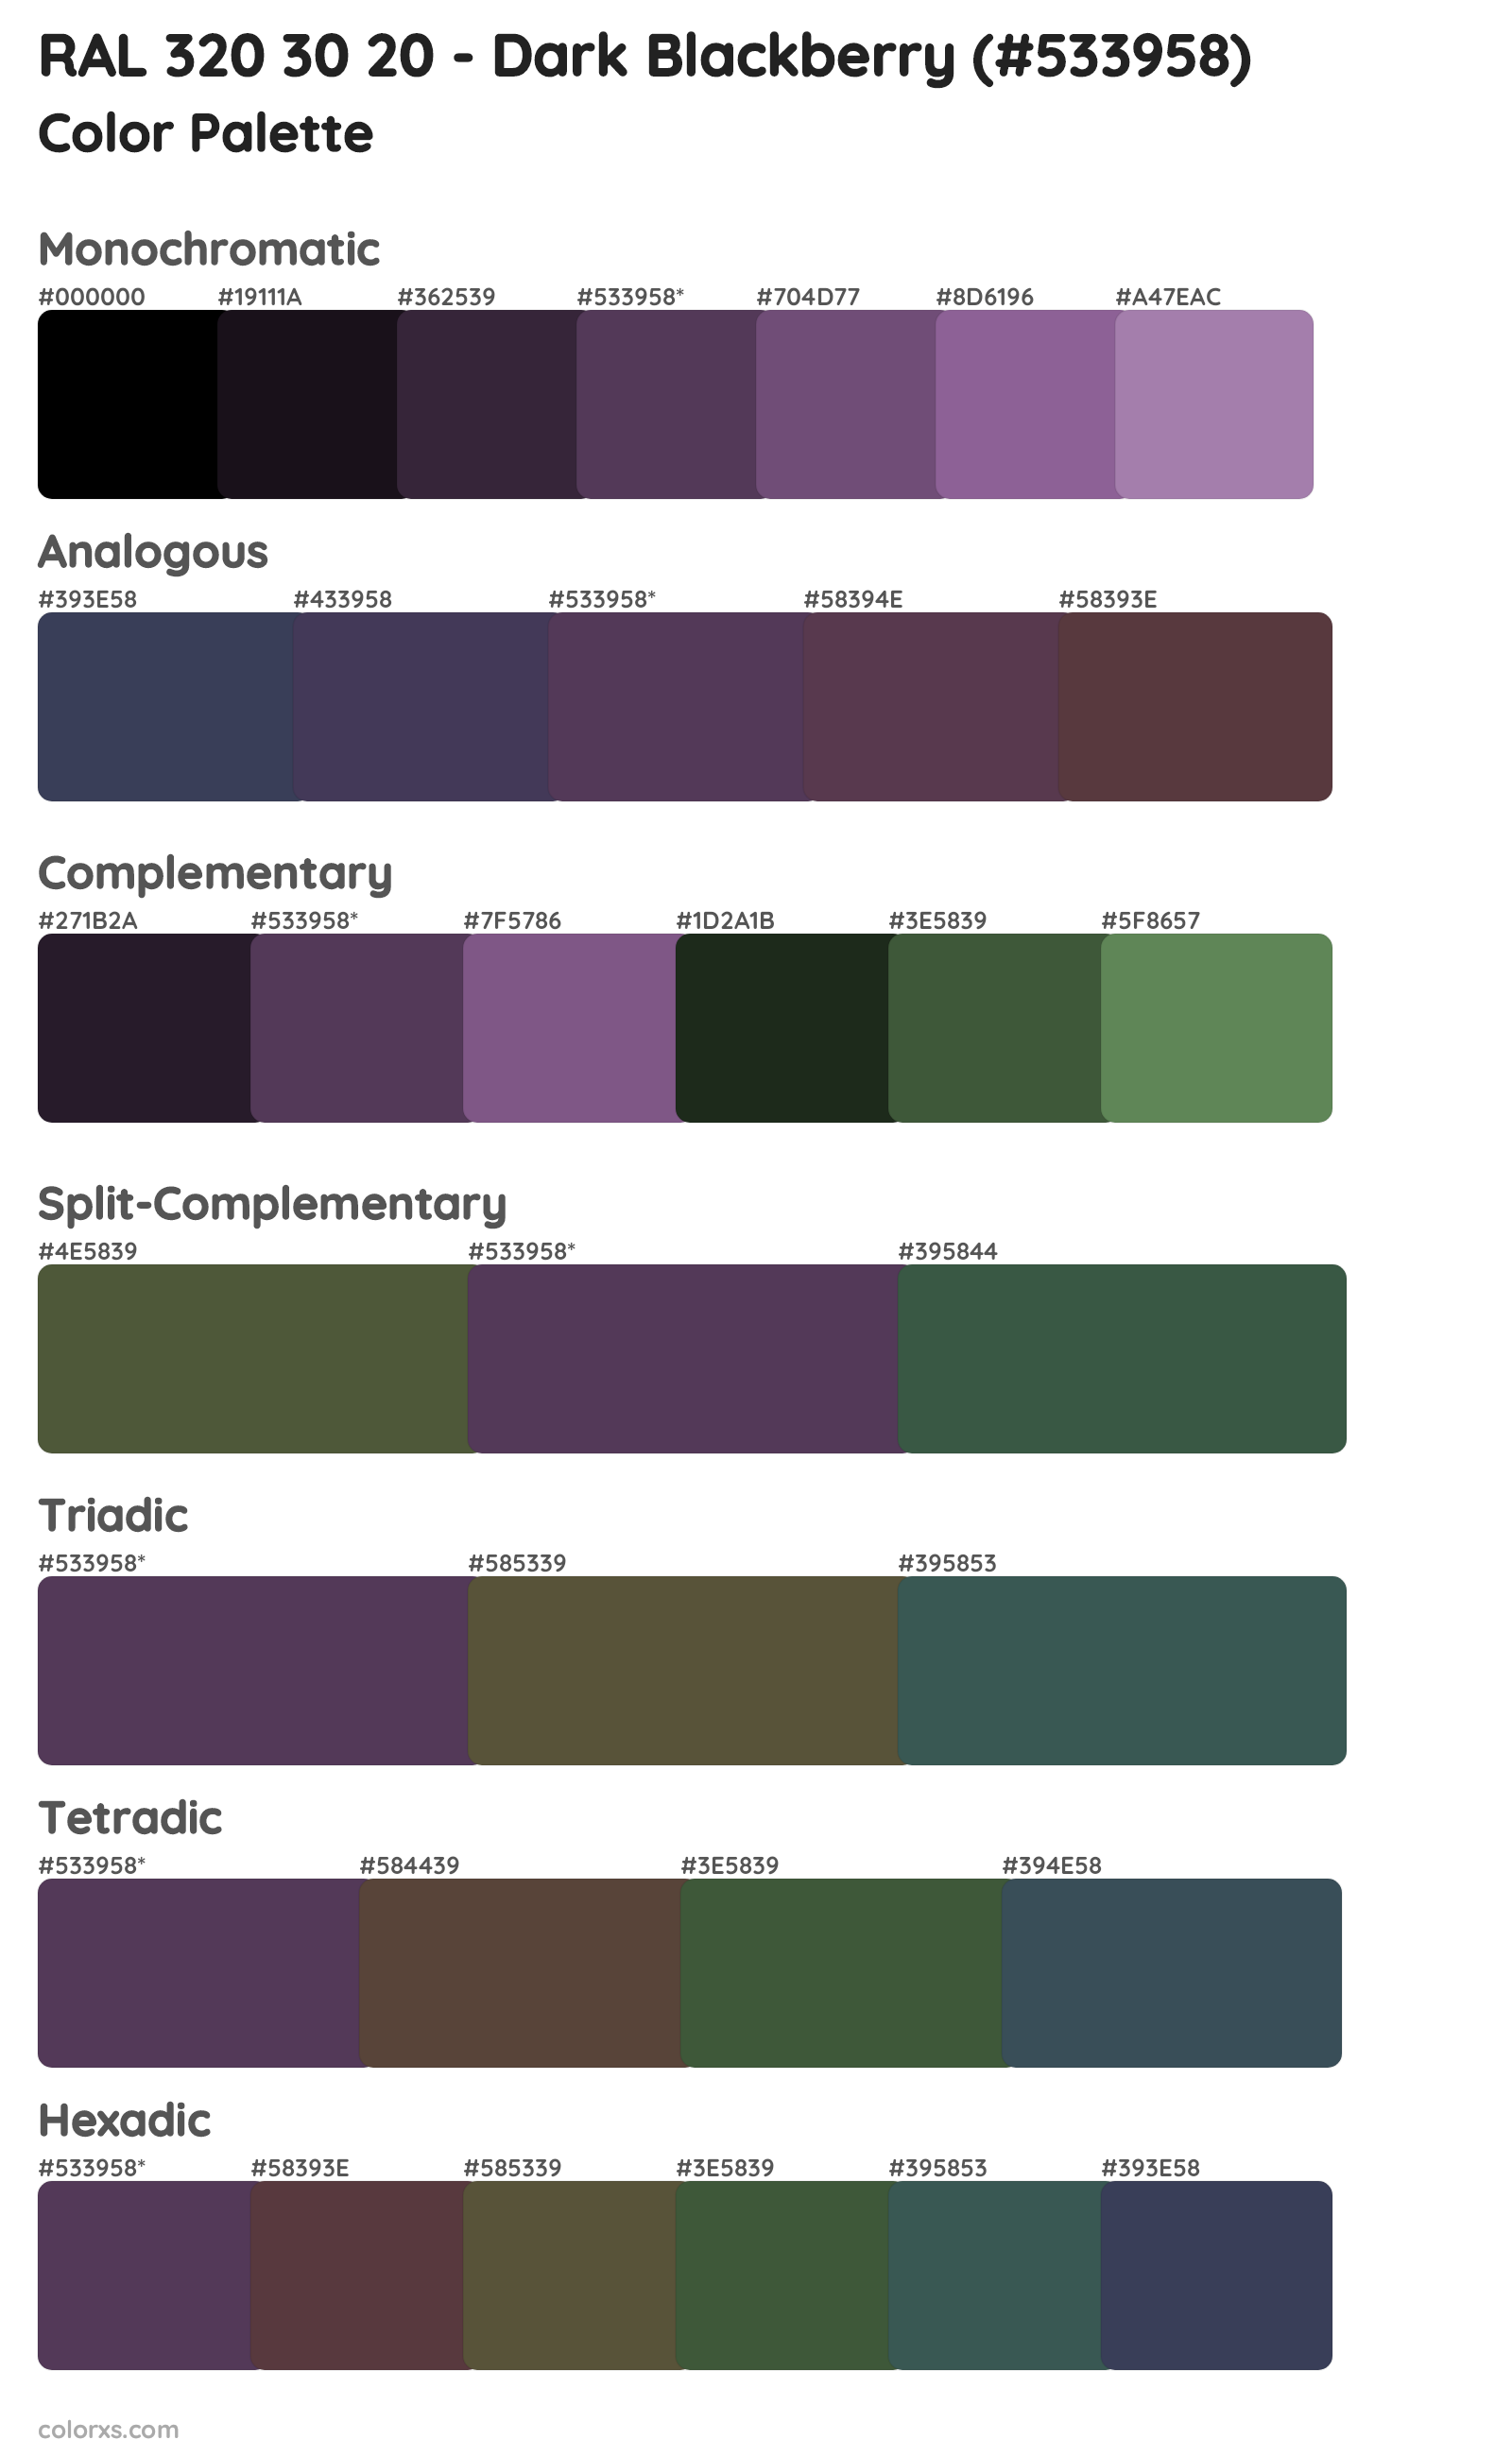 RAL 320 30 20 - Dark Blackberry Color Scheme Palettes